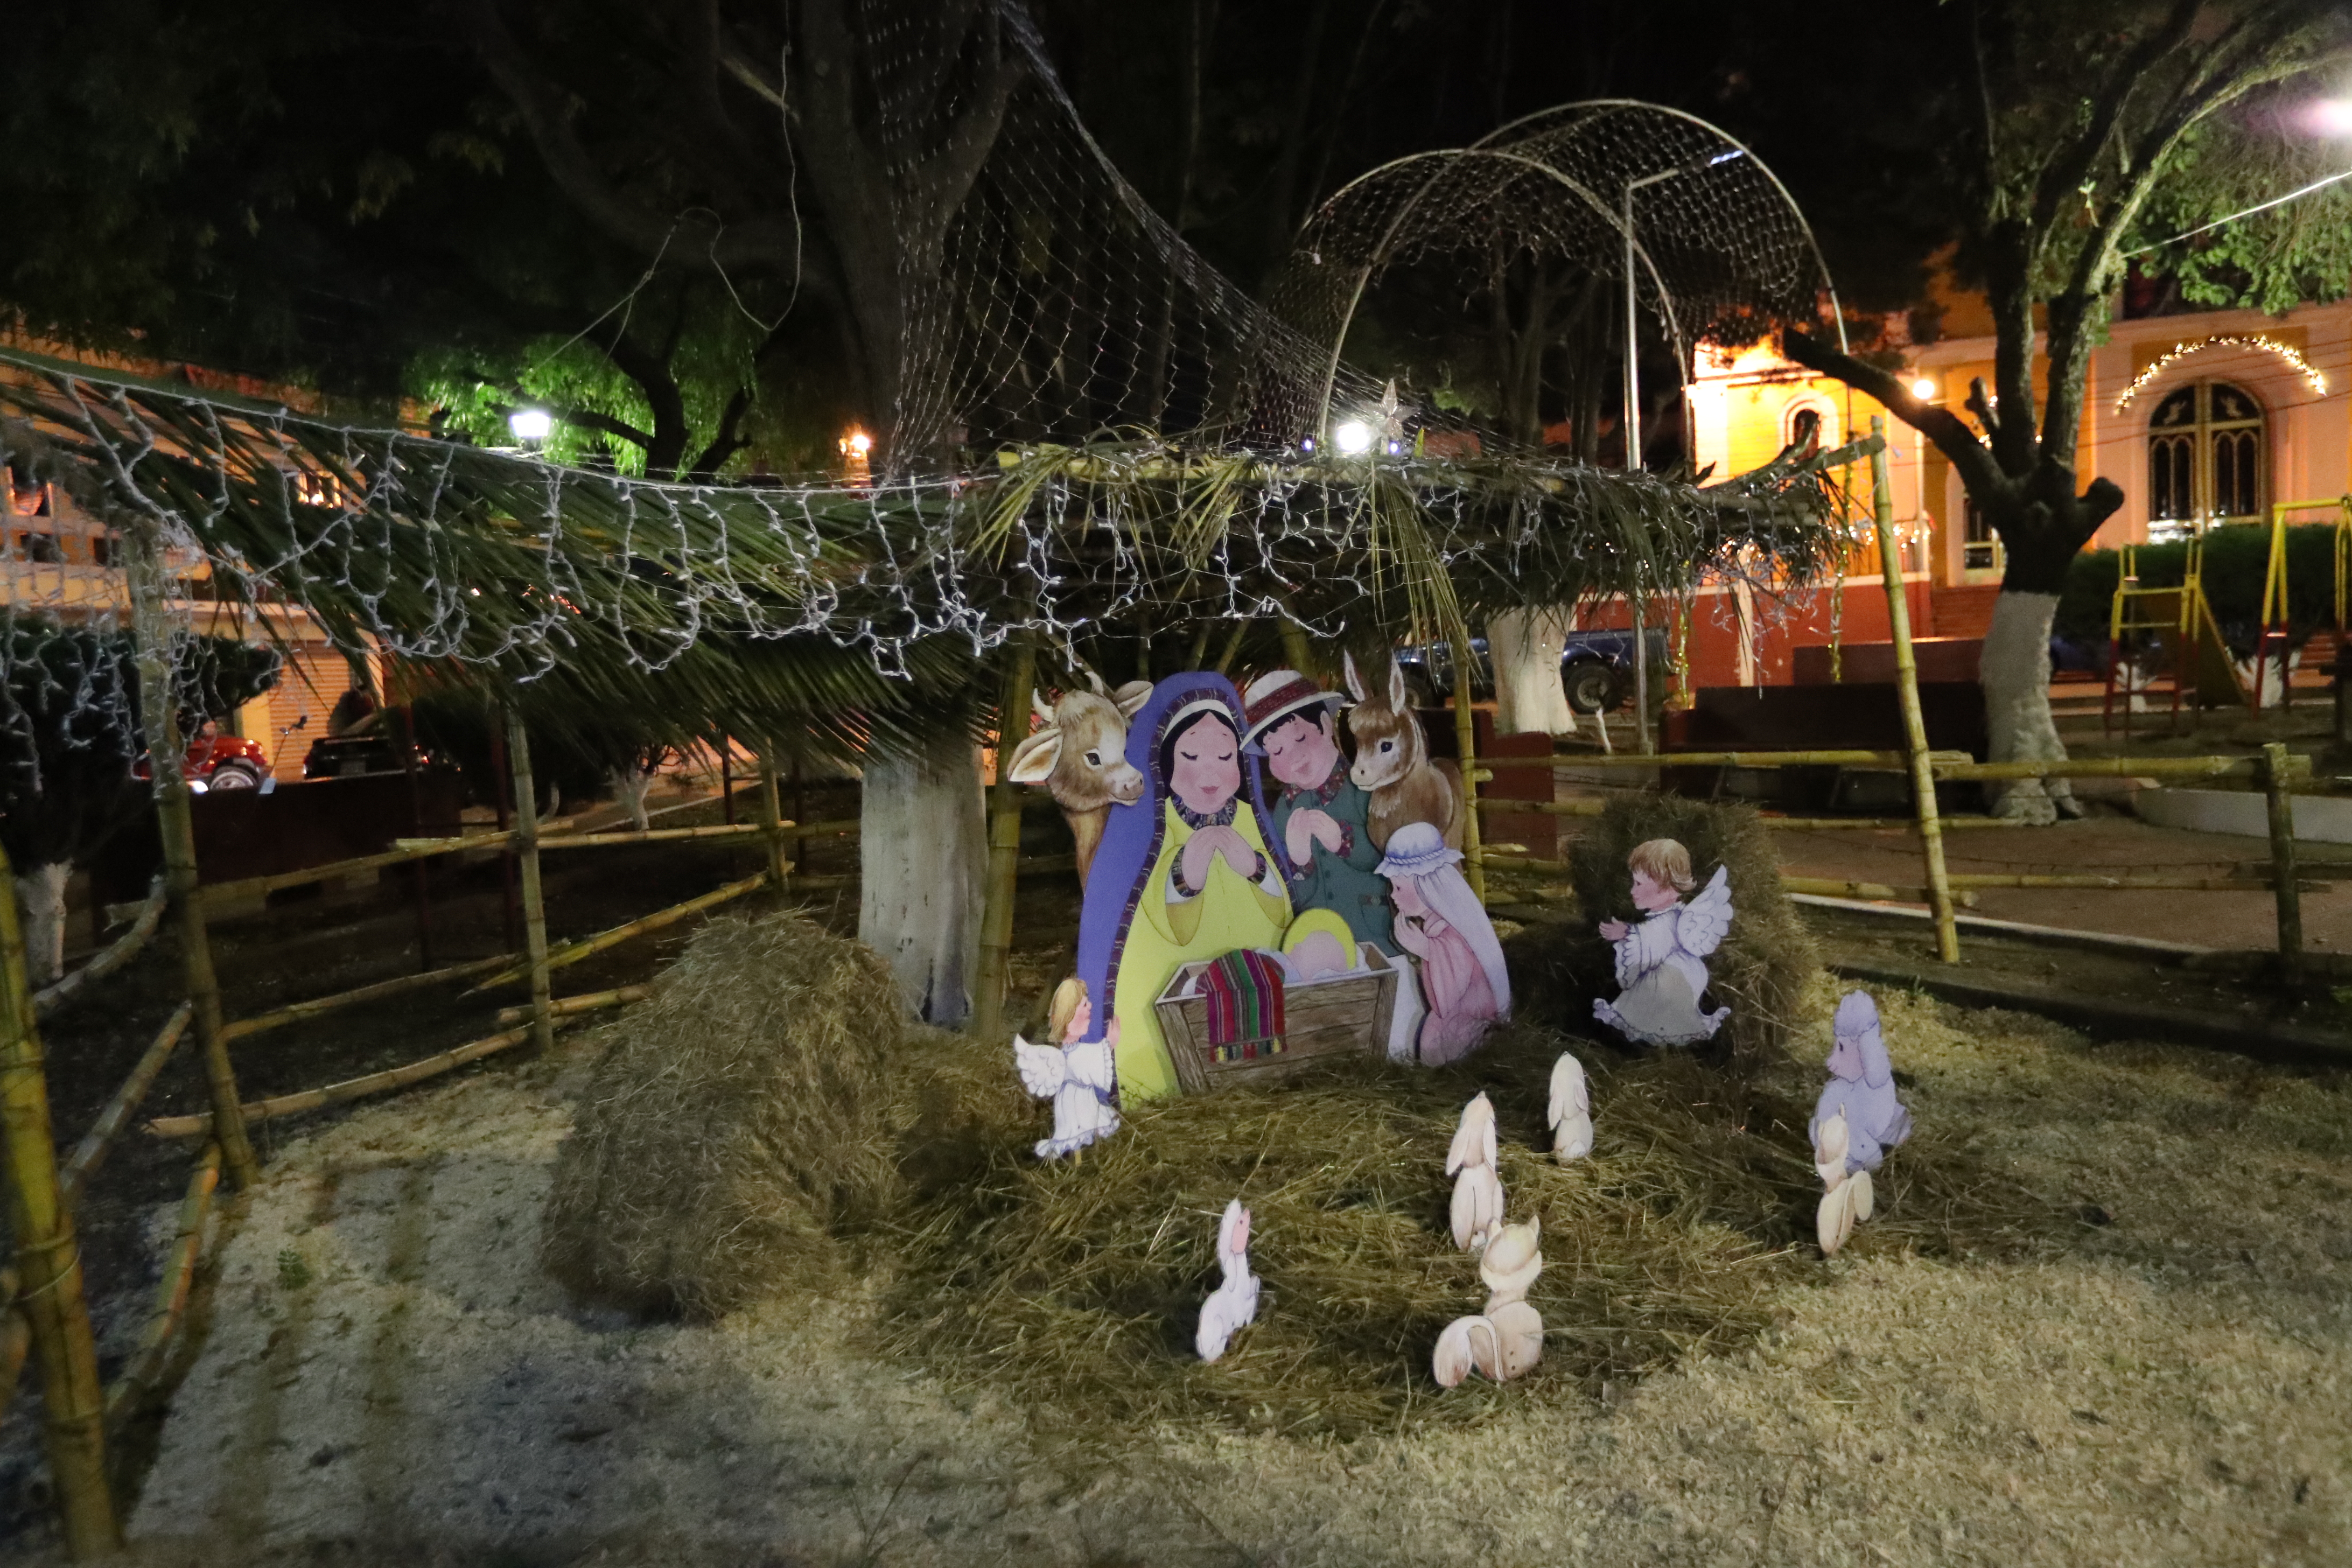 Así se observaba el nacimiento del parque El Carmen después de la suspensión de la energía eléctrica de las luces navideñas, hecho por el que los vecinos señalan al alcalde. (Foto Prensa Libre: María Longo) 